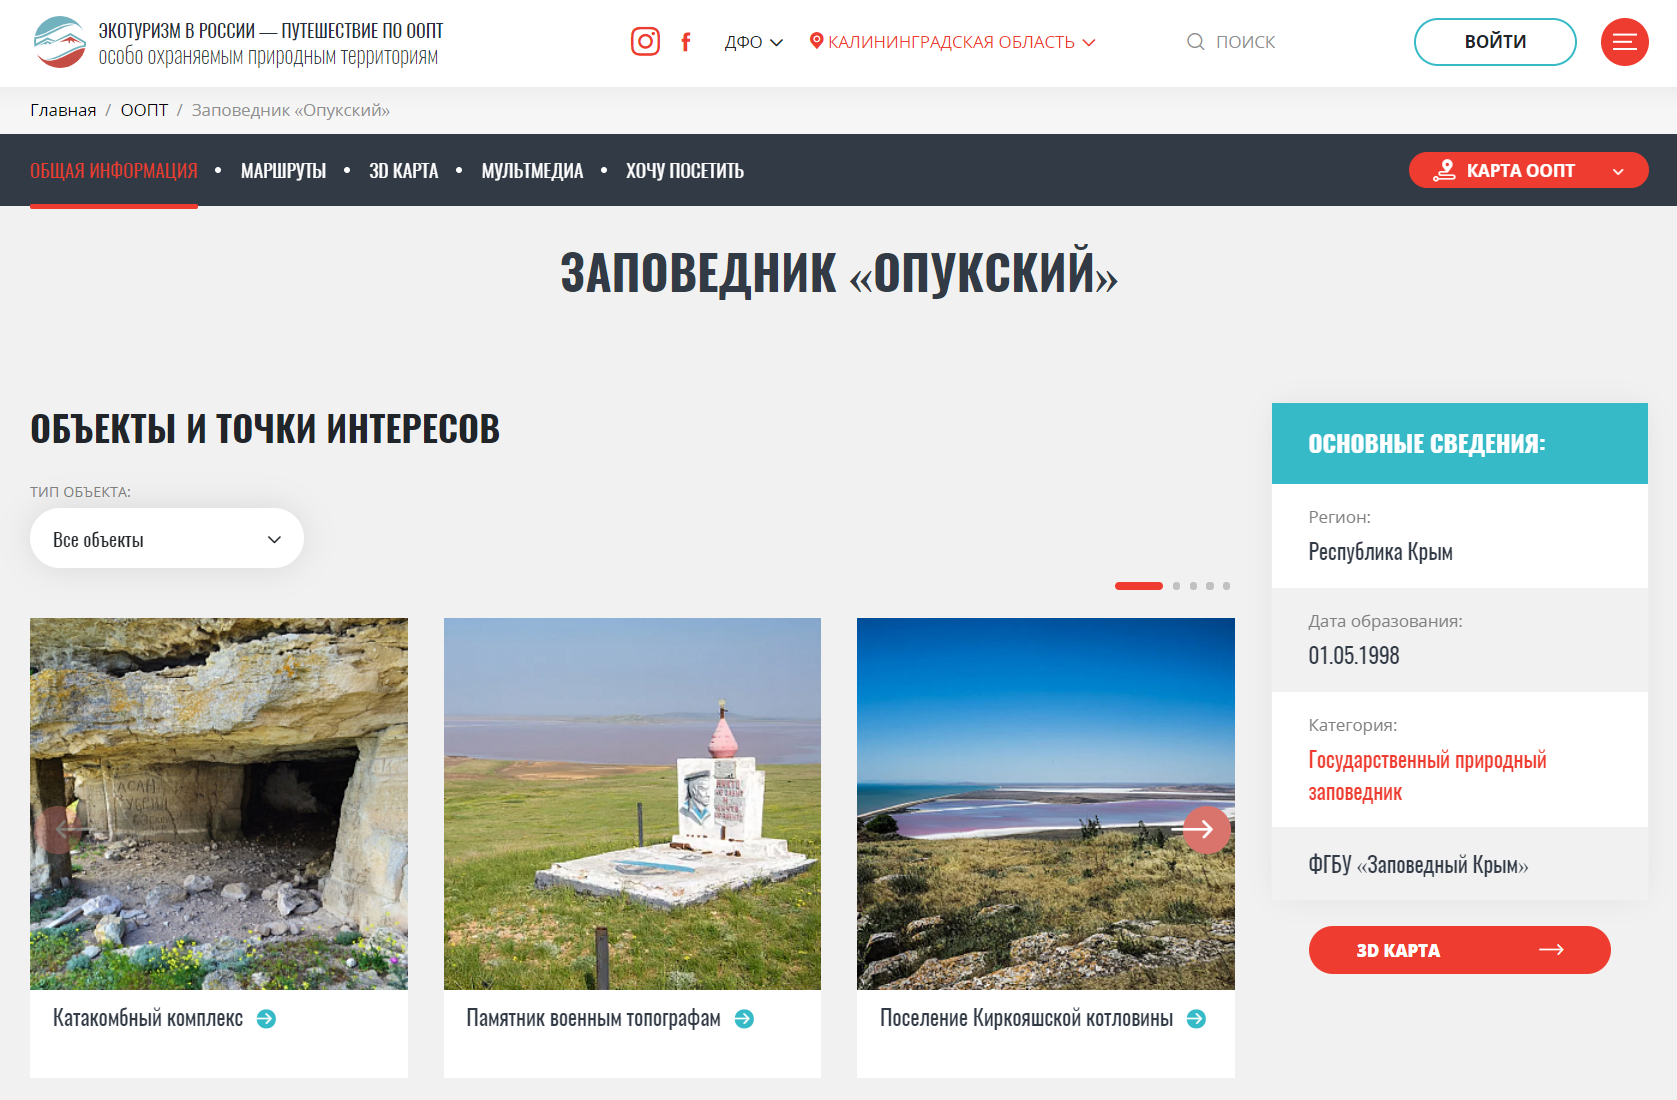 информационный портал экотуризм в россии